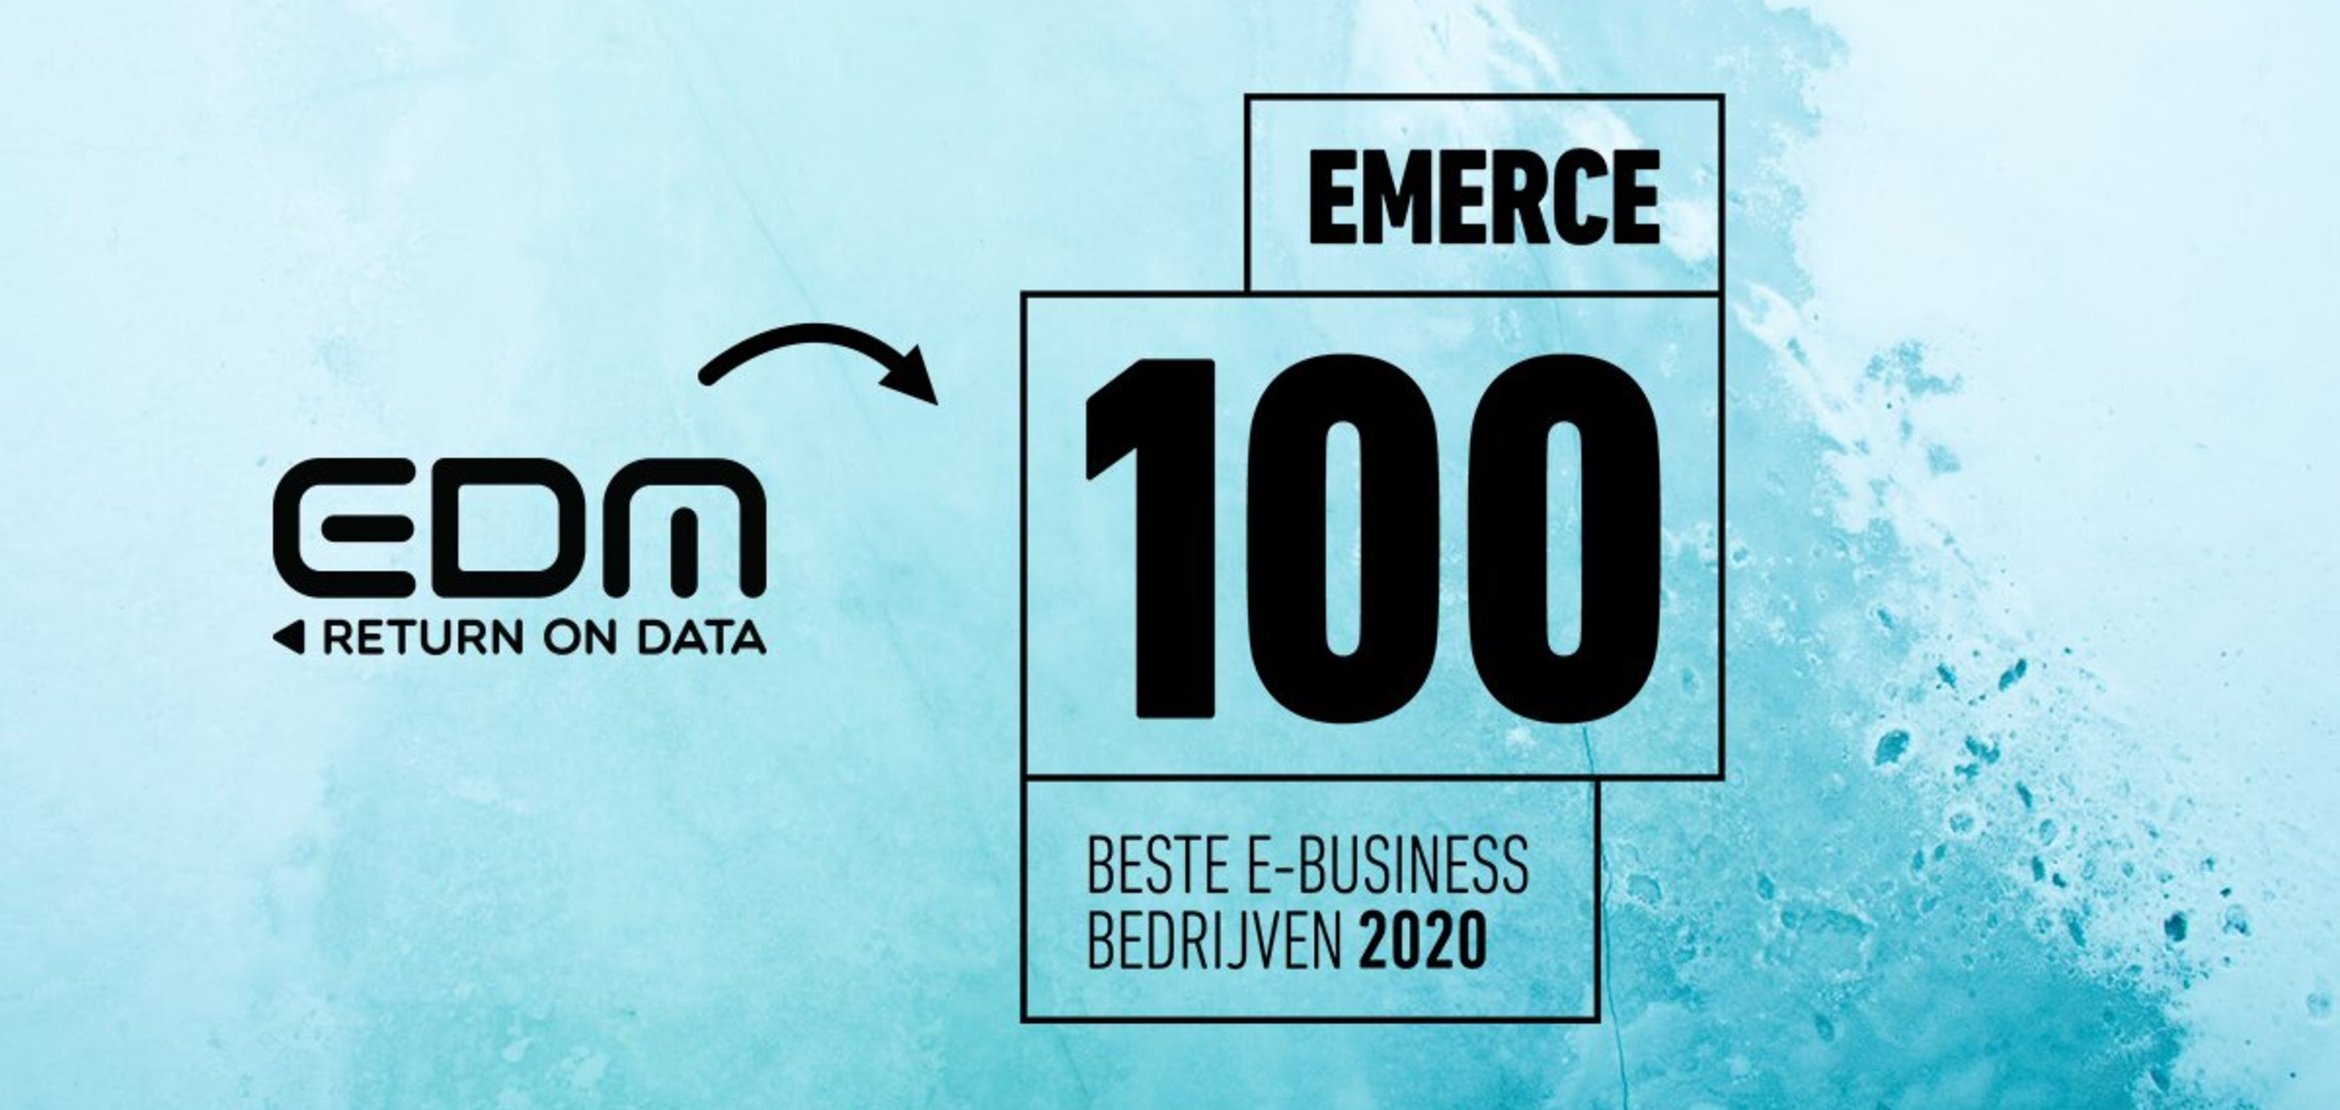 edm-emerce-2020-1.jpg